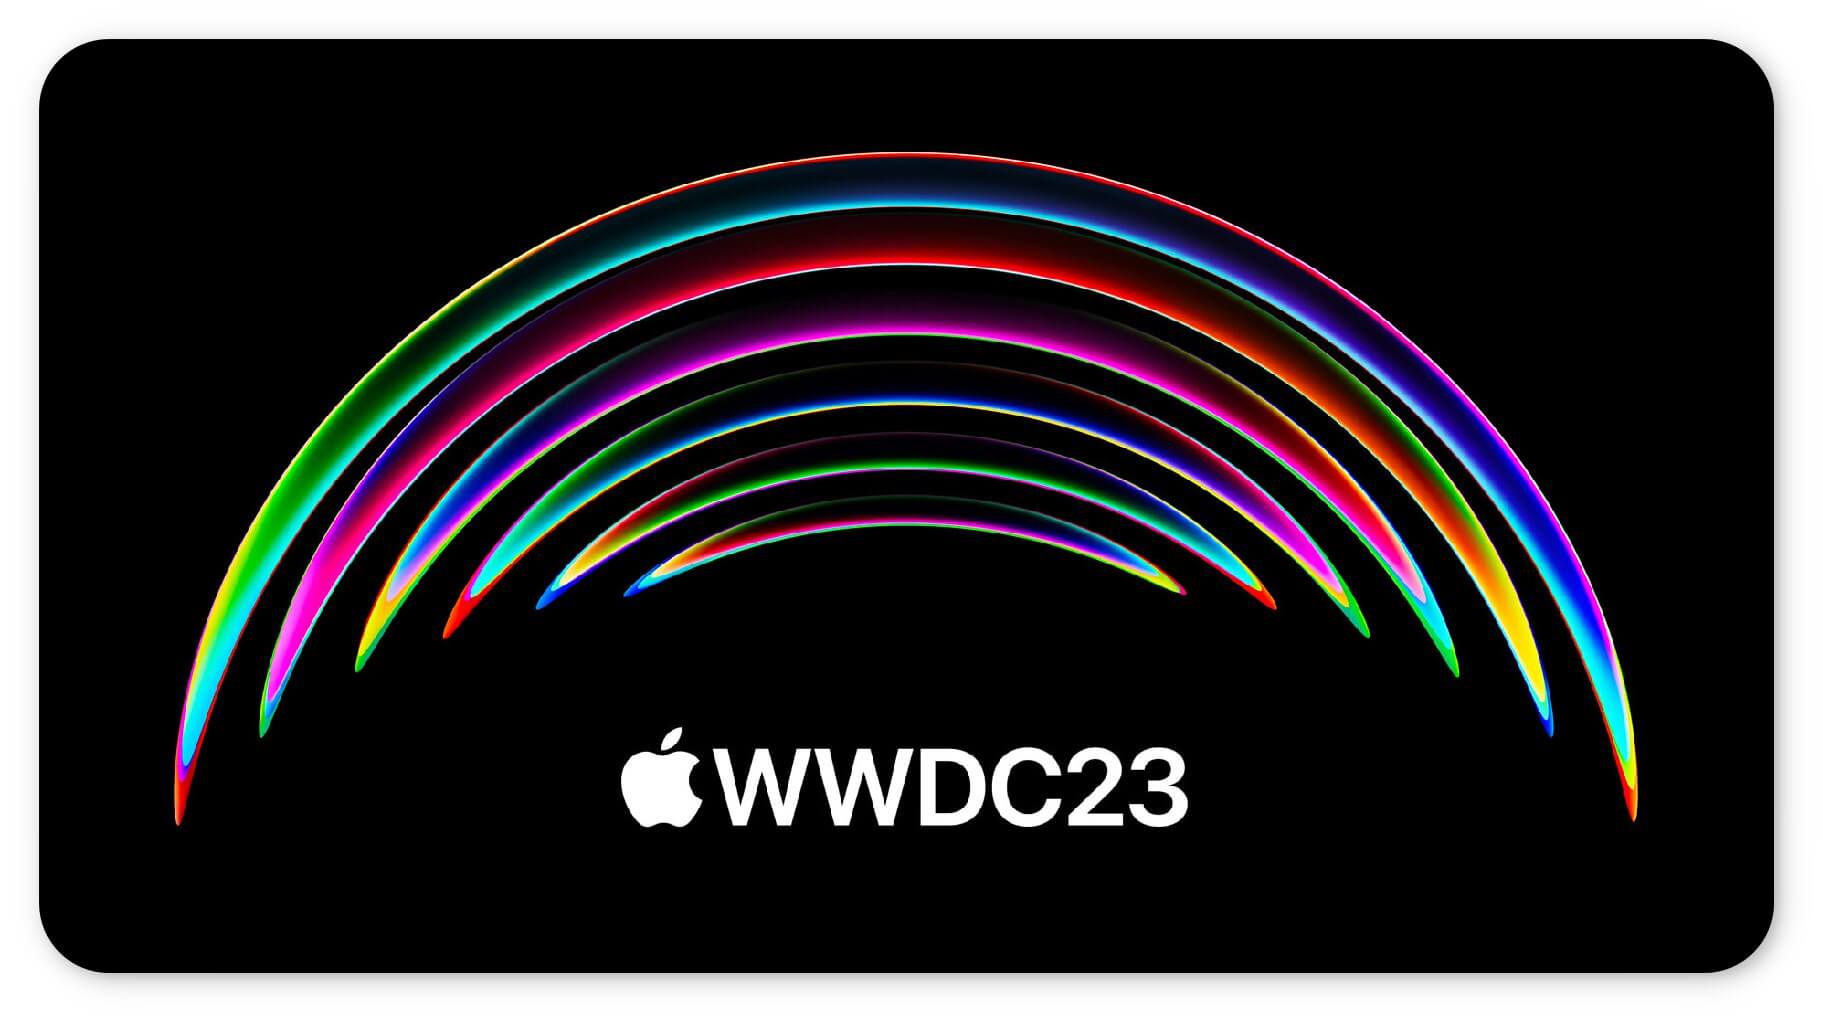 蘋果 WWDC23 將在 6 月 6 日舉辦